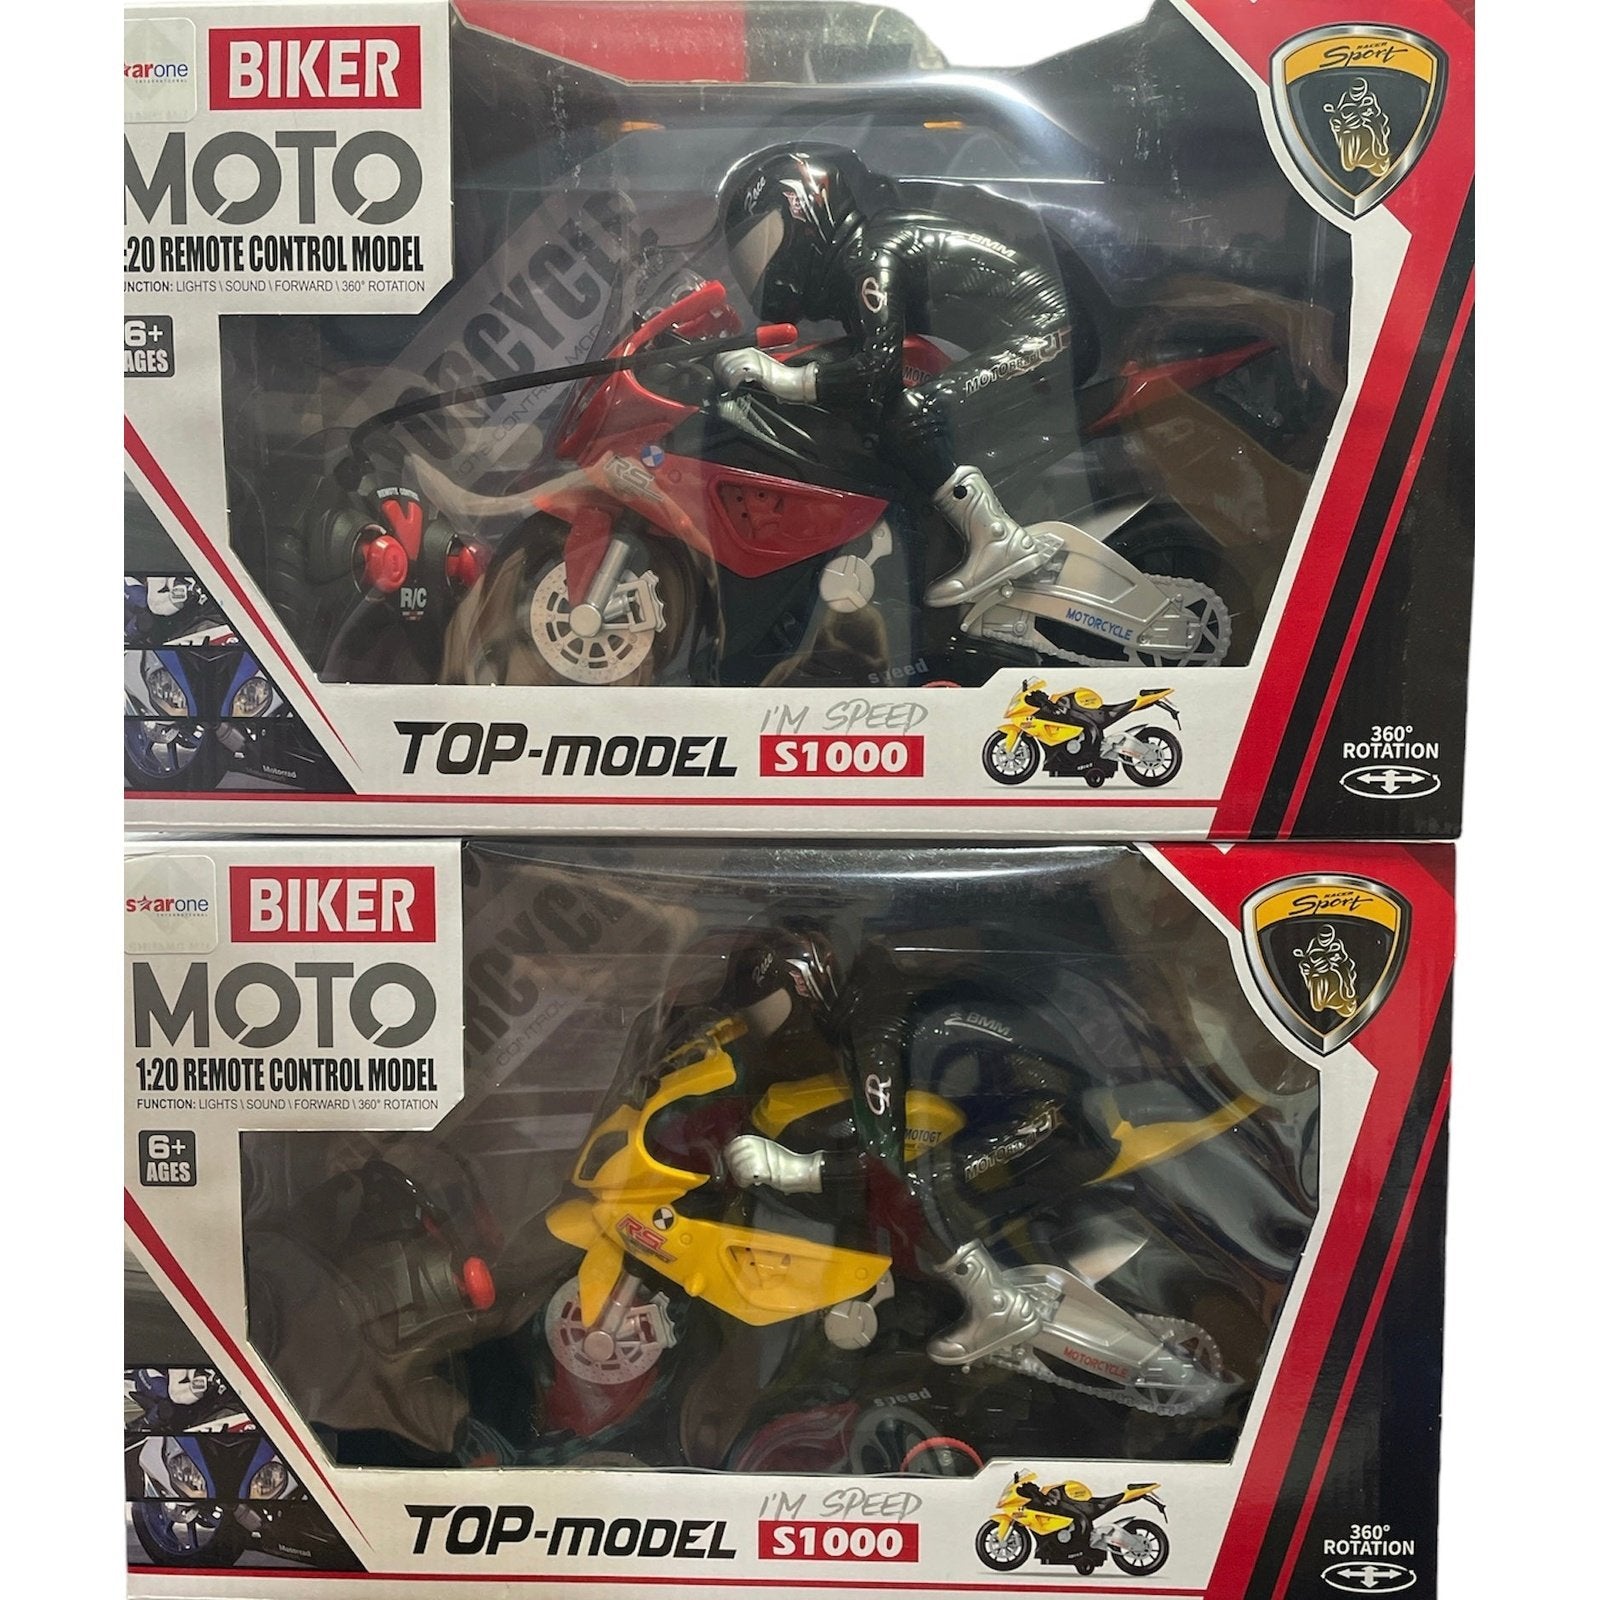 R/C Motor Bike Toy For Kids - kidzbuzzz